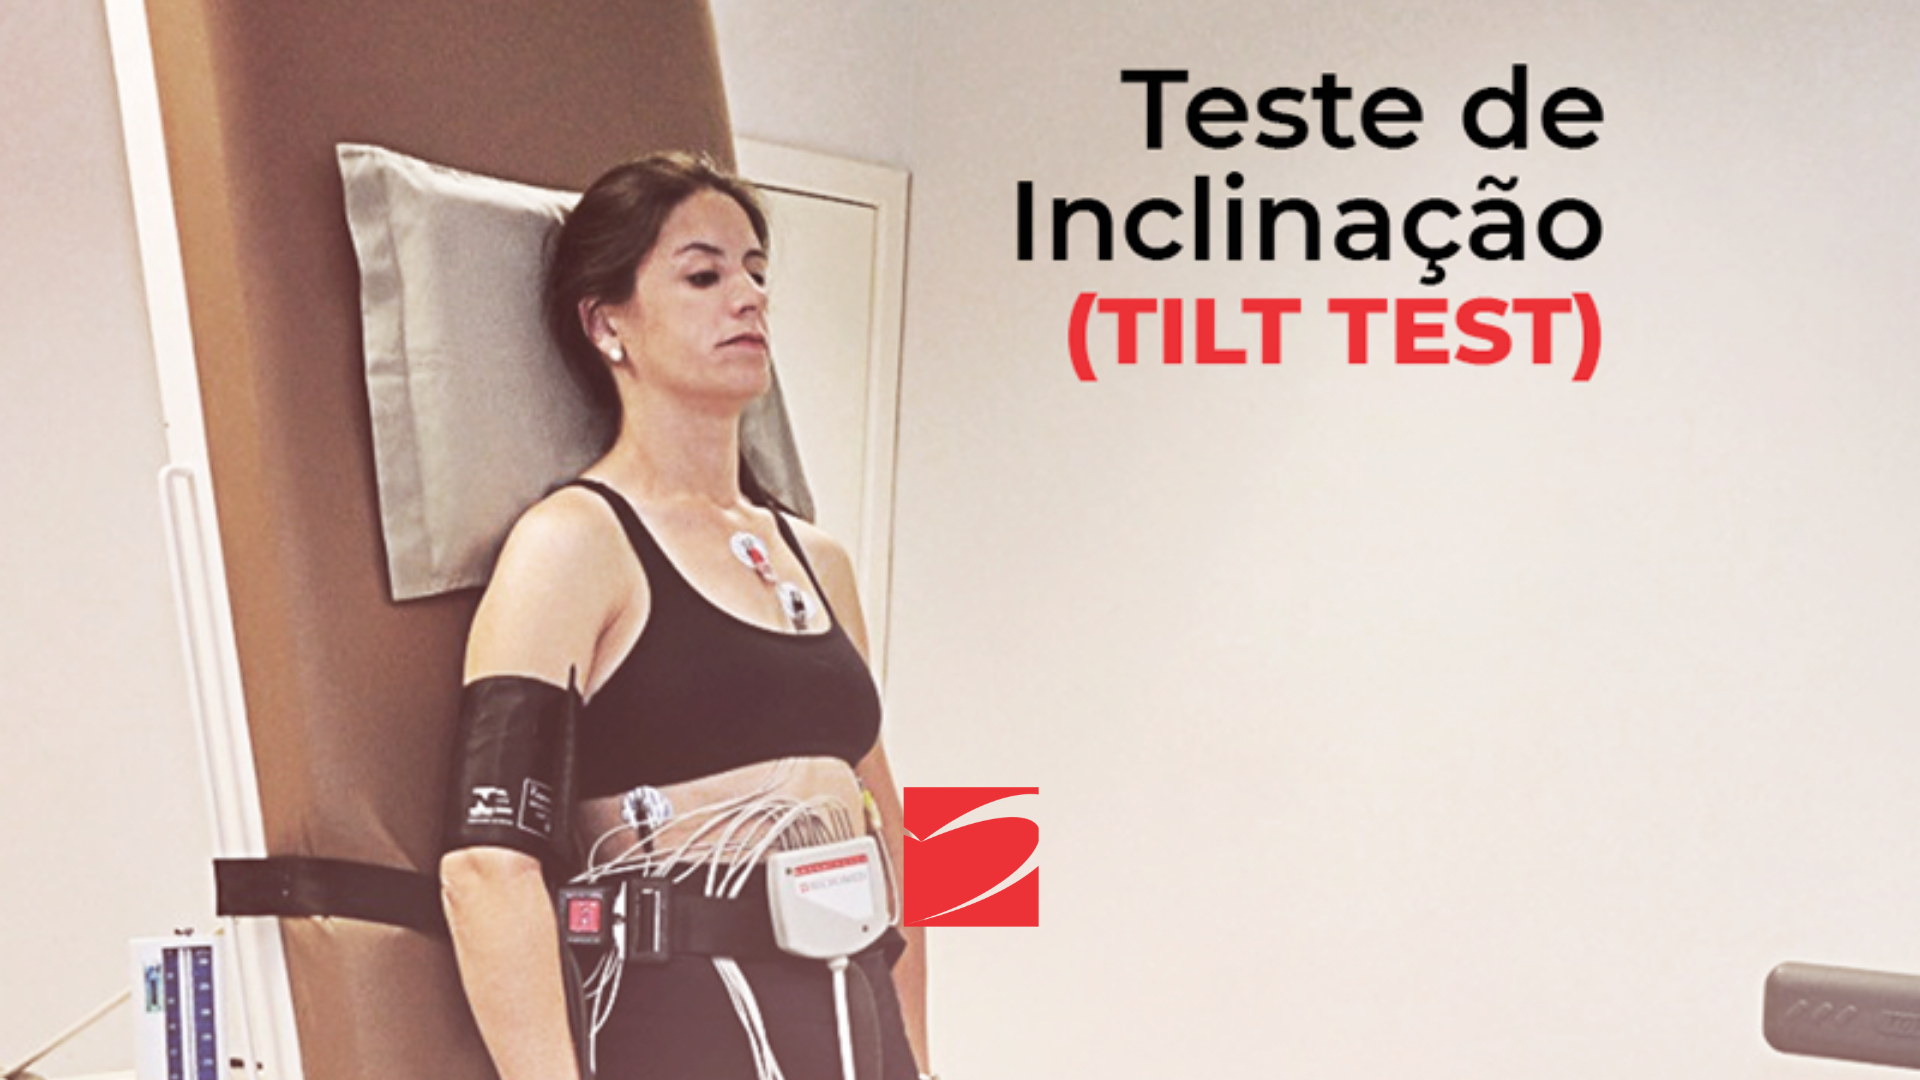 Tilt Test - ICOR - Instituto do Coração de Santa Maria